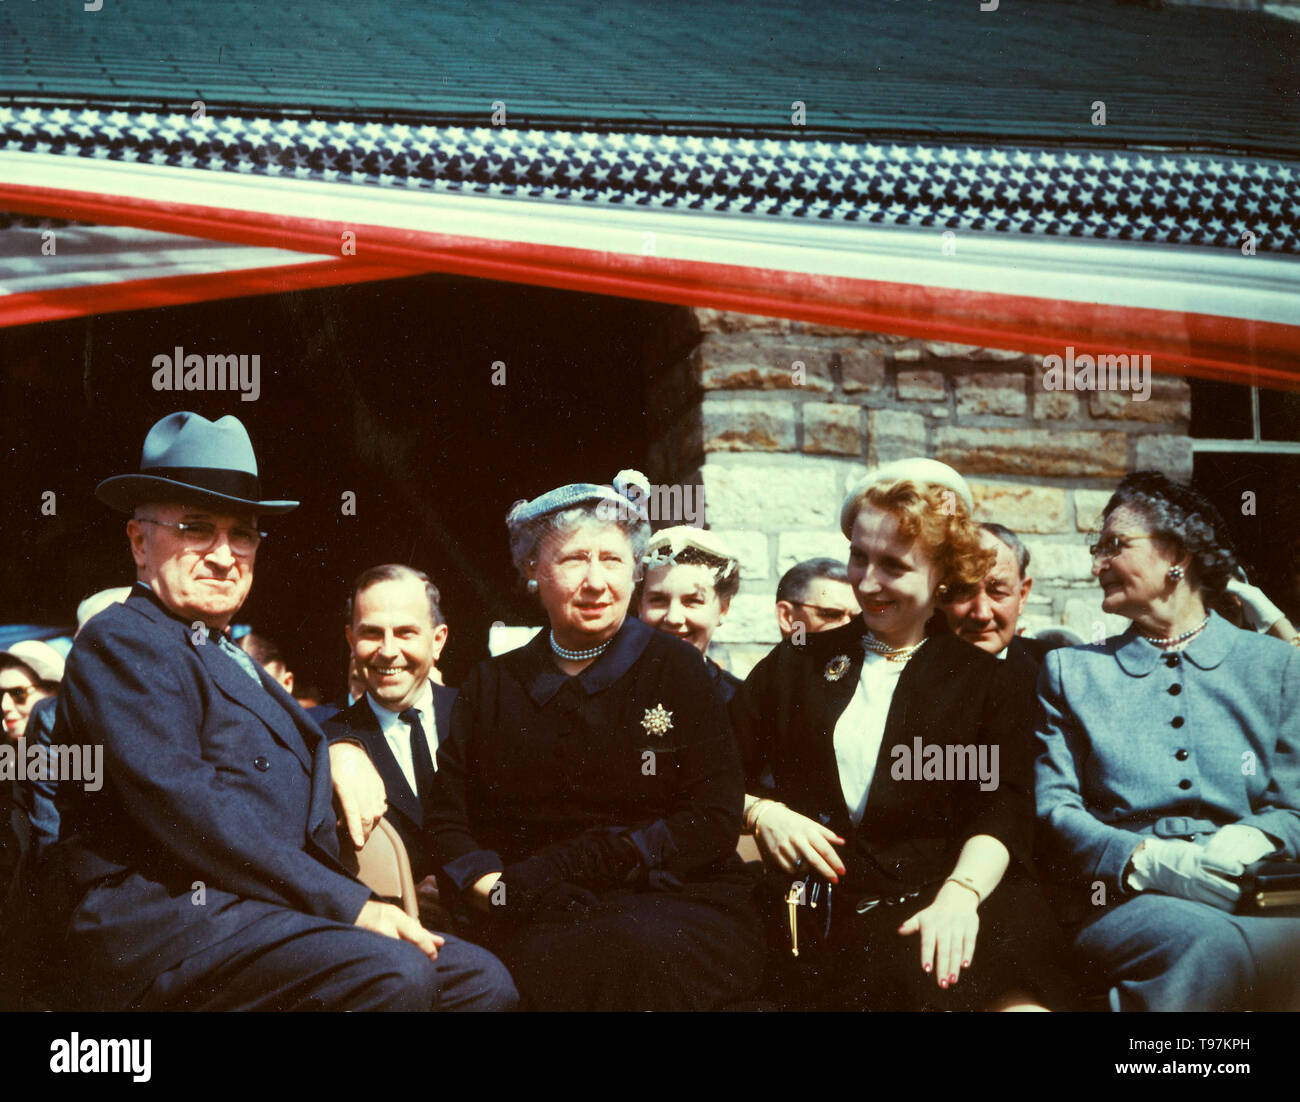 Truman Library rivoluzionaria, 05/08/1955 - Da sinistra a destra, ex presidente Harry Truman, la sig.ra Bess W. Truman, Margaret Truman e Mary Jane Truman a terra rompendo le cerimonie per la Harry Truman Library Foto Stock